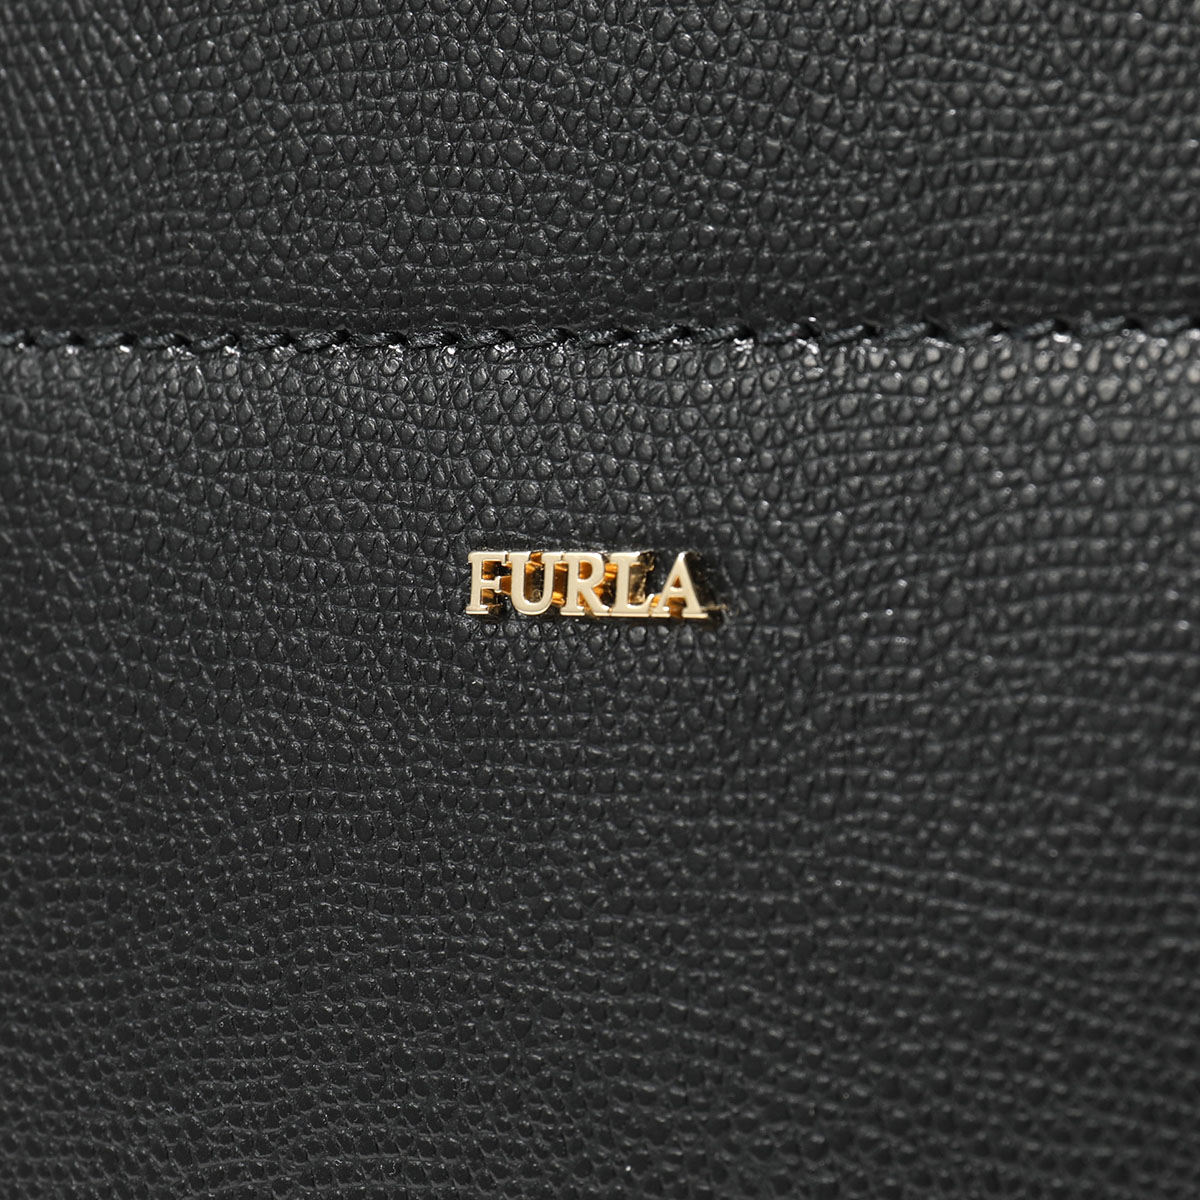 Furla フルラ 1045278 BZF4 ARE ASTRID M TOTE アストリッド レザー トートバッグ ショルダーバッグ NERO 鞄  レディース | インポートセレクト musee